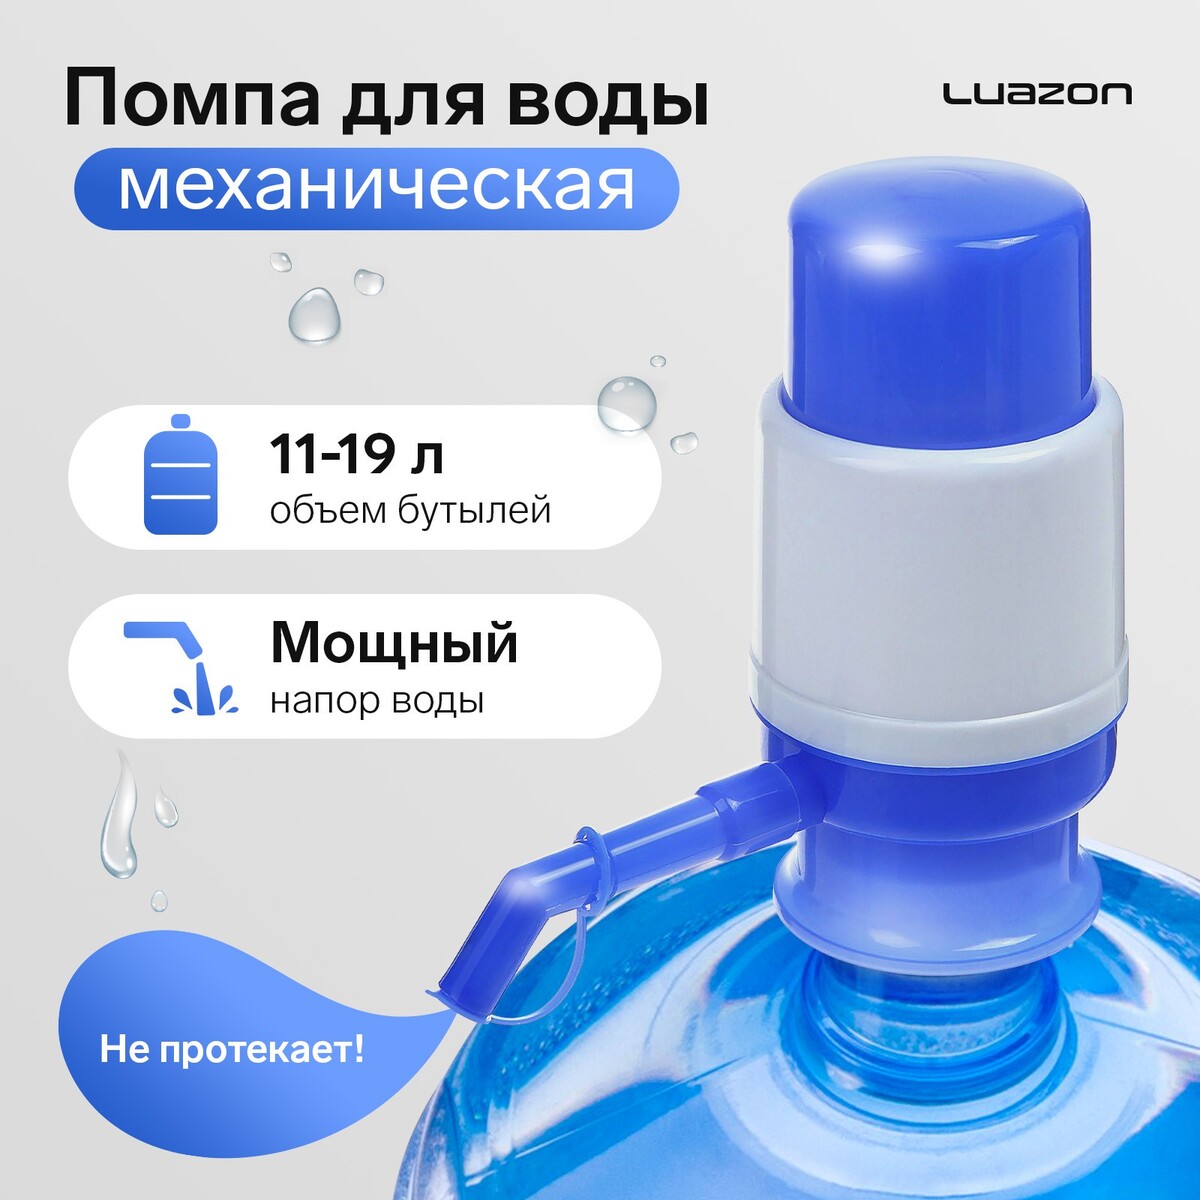 Помпа для воды luazon, механическая, малая, под бутыль от 11 до 19 л, голубая помпа для воды luazon механическая большая под бутыль от 11 до 19 л голубая